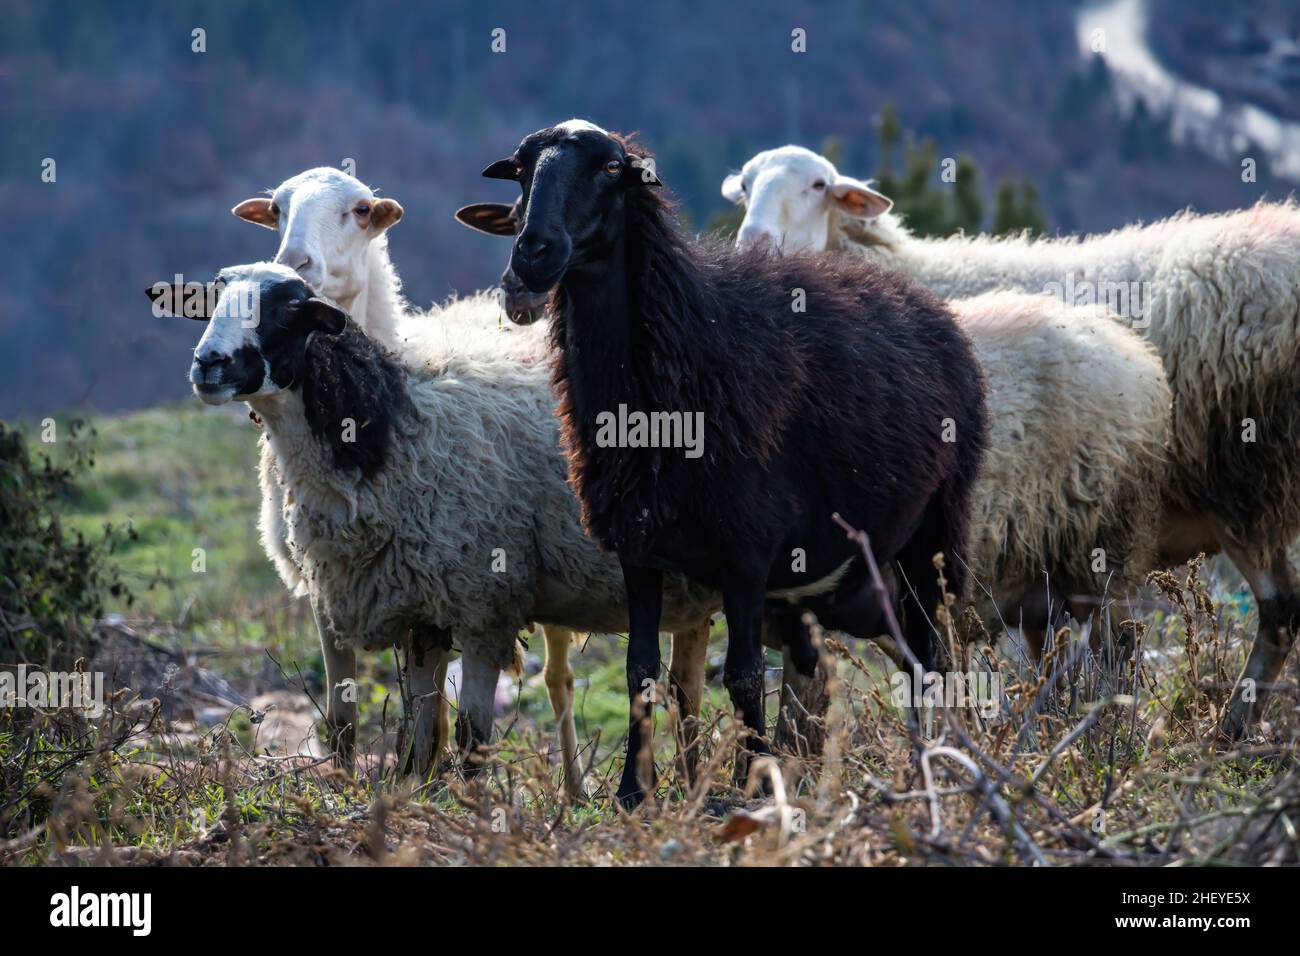 Granja de ovejas. Rebaño de cordero y oveja blanca y un animal de color negro mirando la cámara, día de invierno en el pasto Foto de stock